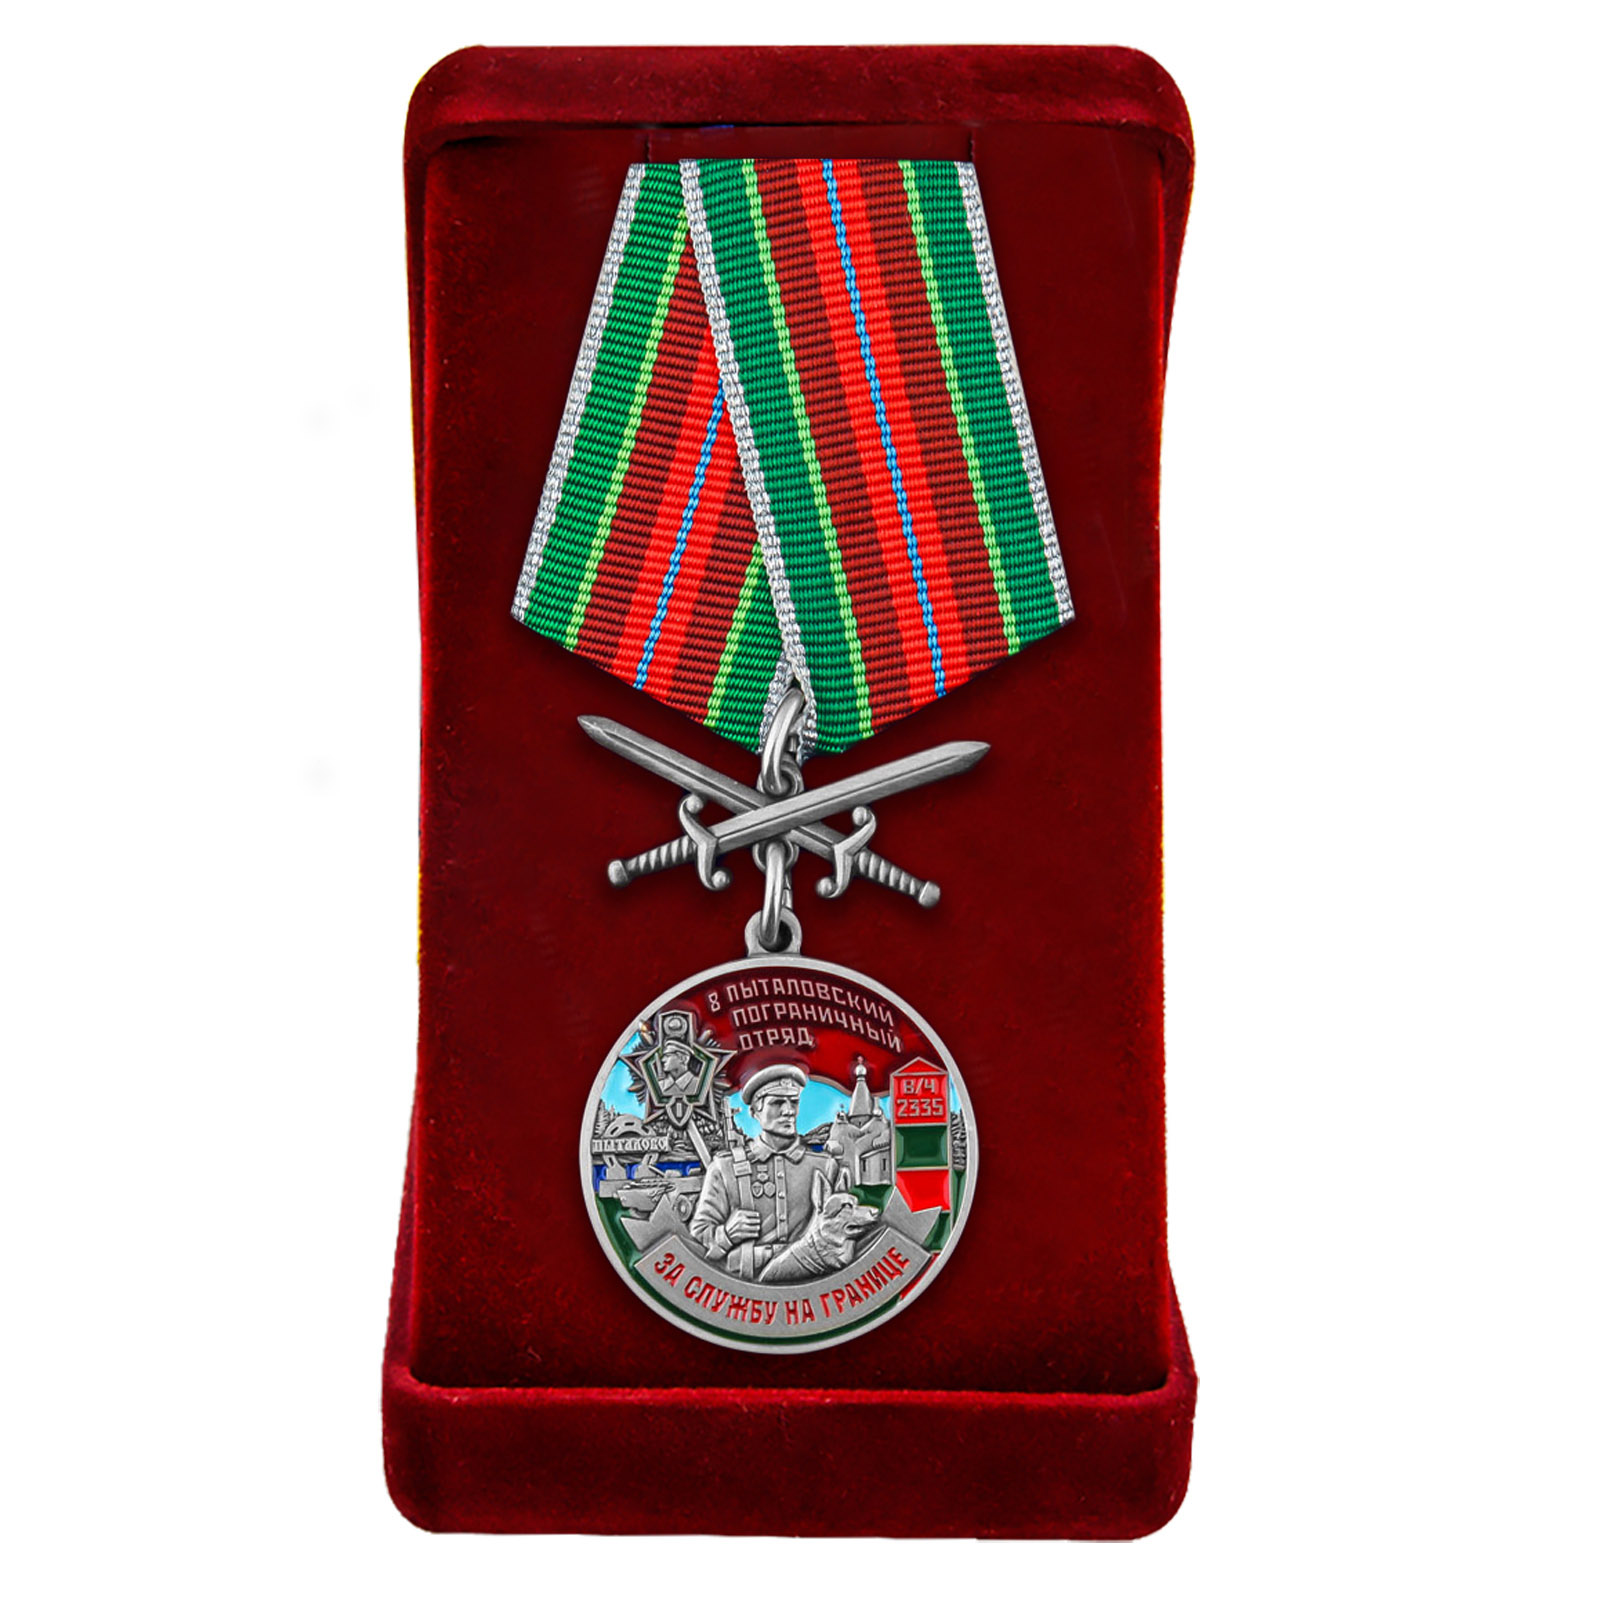 Купить медаль "За службу в Пыталовском погранотряде" в бархатистом футляре